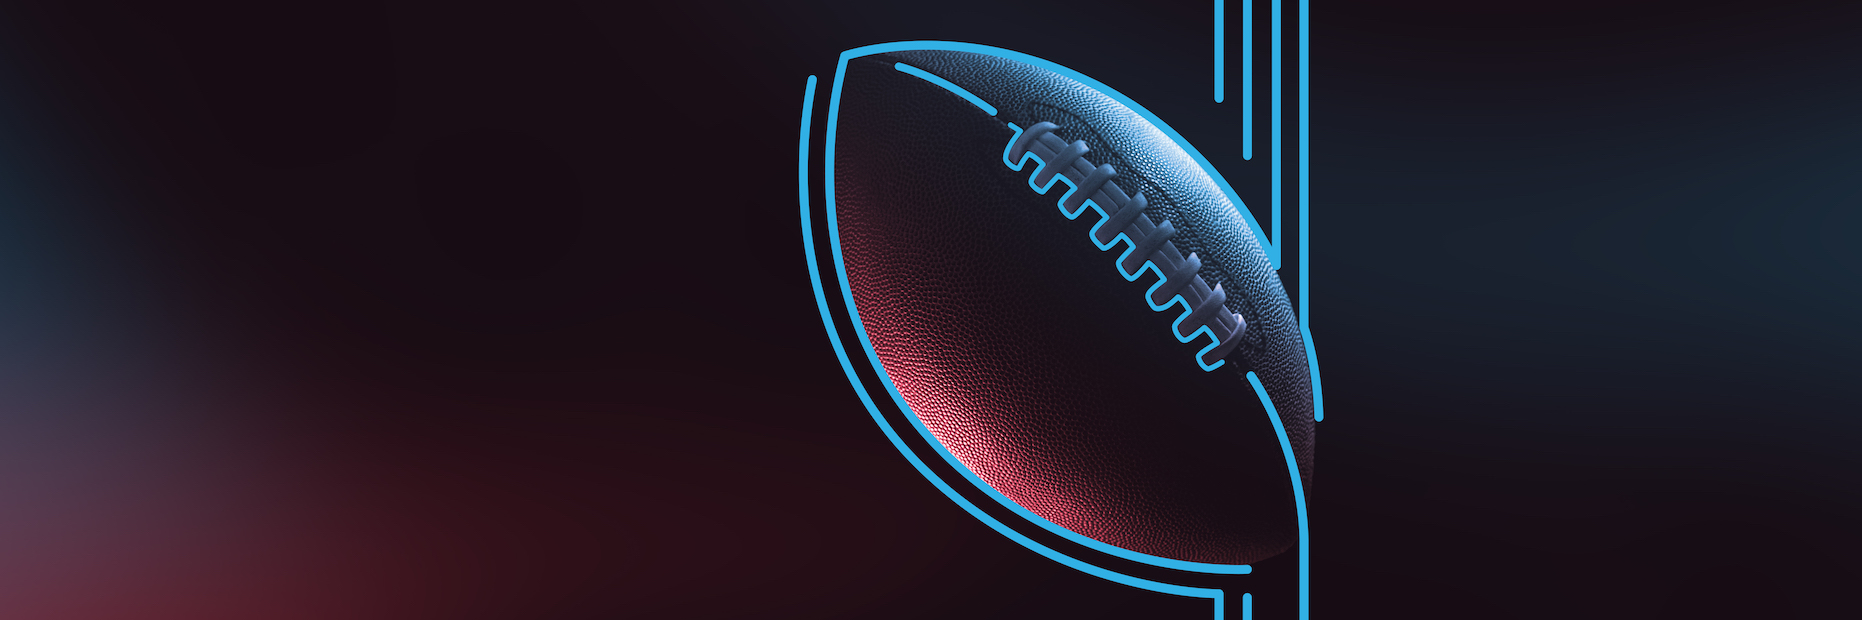 Brand Bowl 2021 Ad Tracker: Doritos